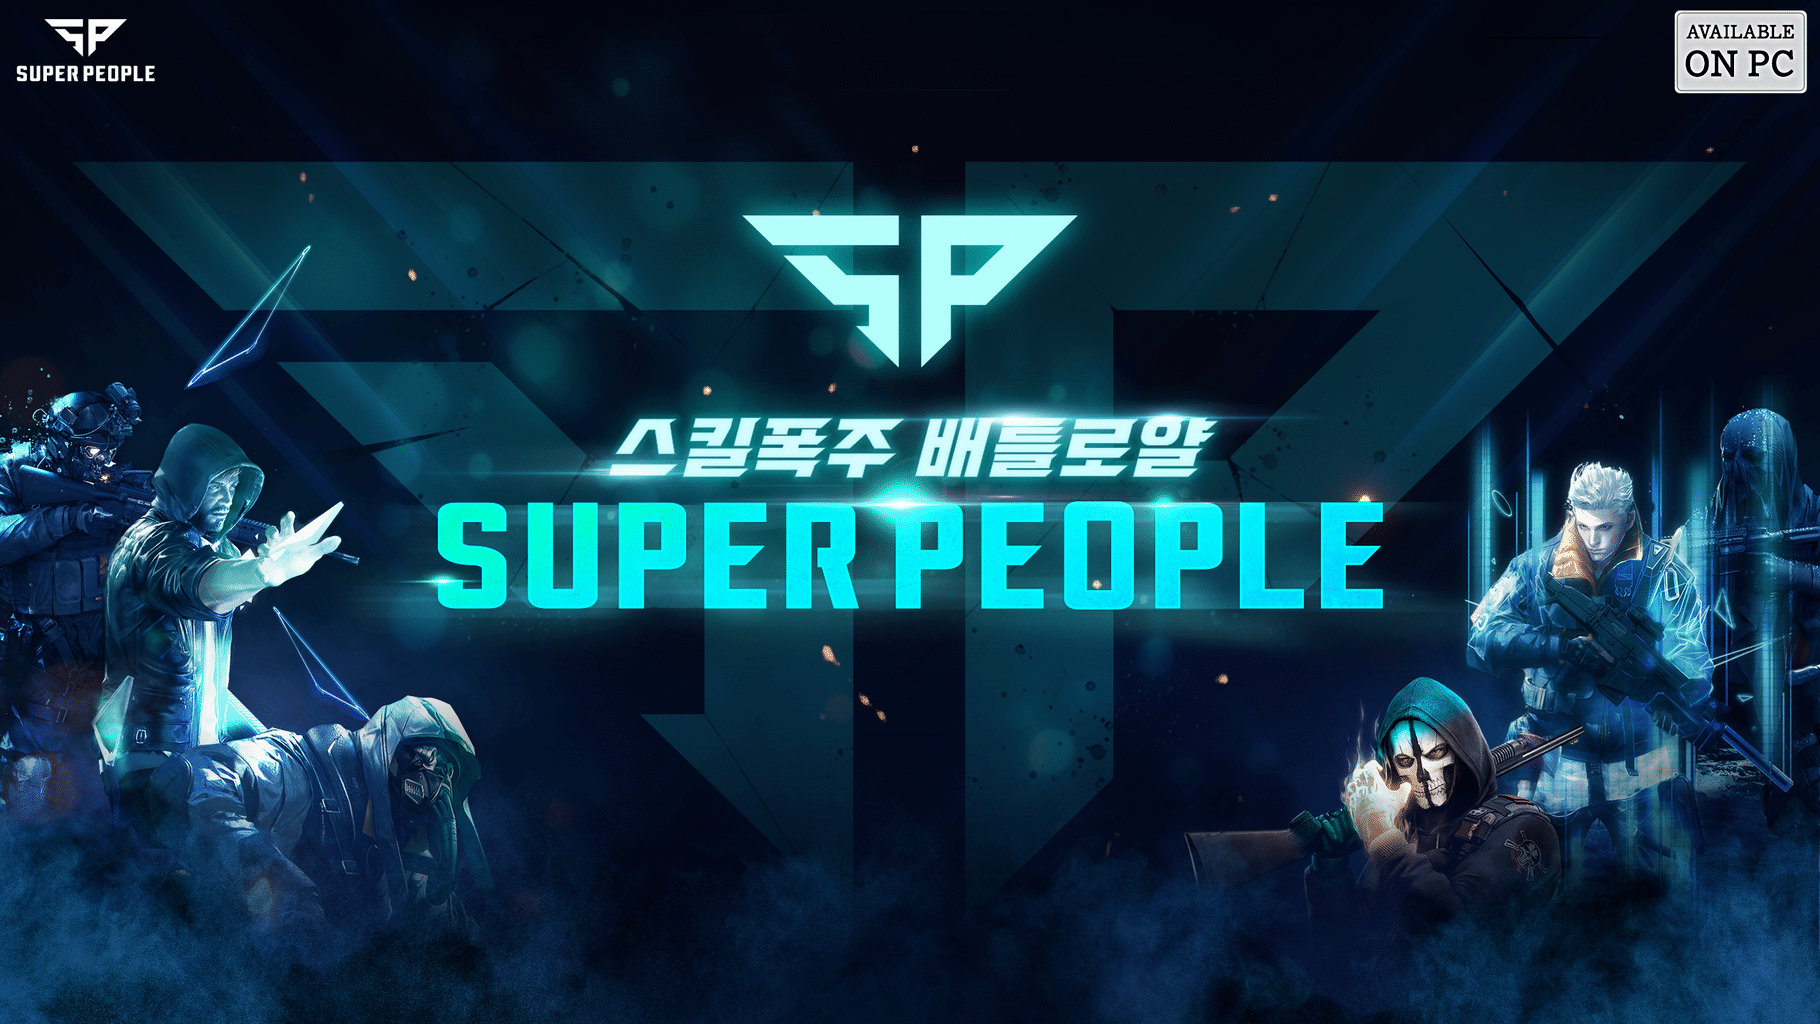 Jogo Grátis: Super People é lançado hoje para PC (Steam)